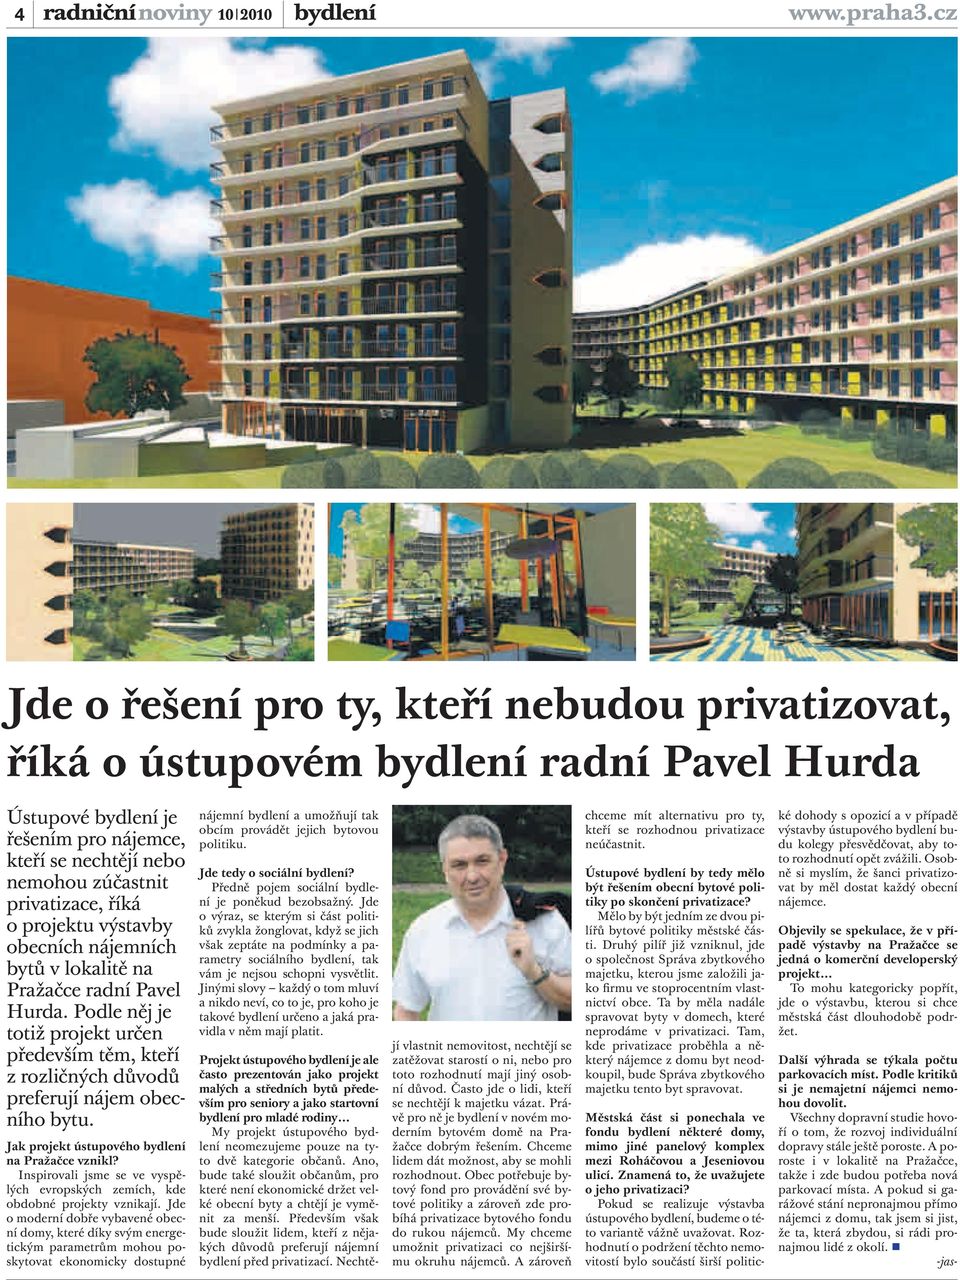 projektu výstavby obecních nájemních bytů v lokalitě na Pražačce radní Pavel Hurda. Podle něj je totiž projekt určen především těm, kteří z rozličných důvodů preferují nájem obecního bytu.